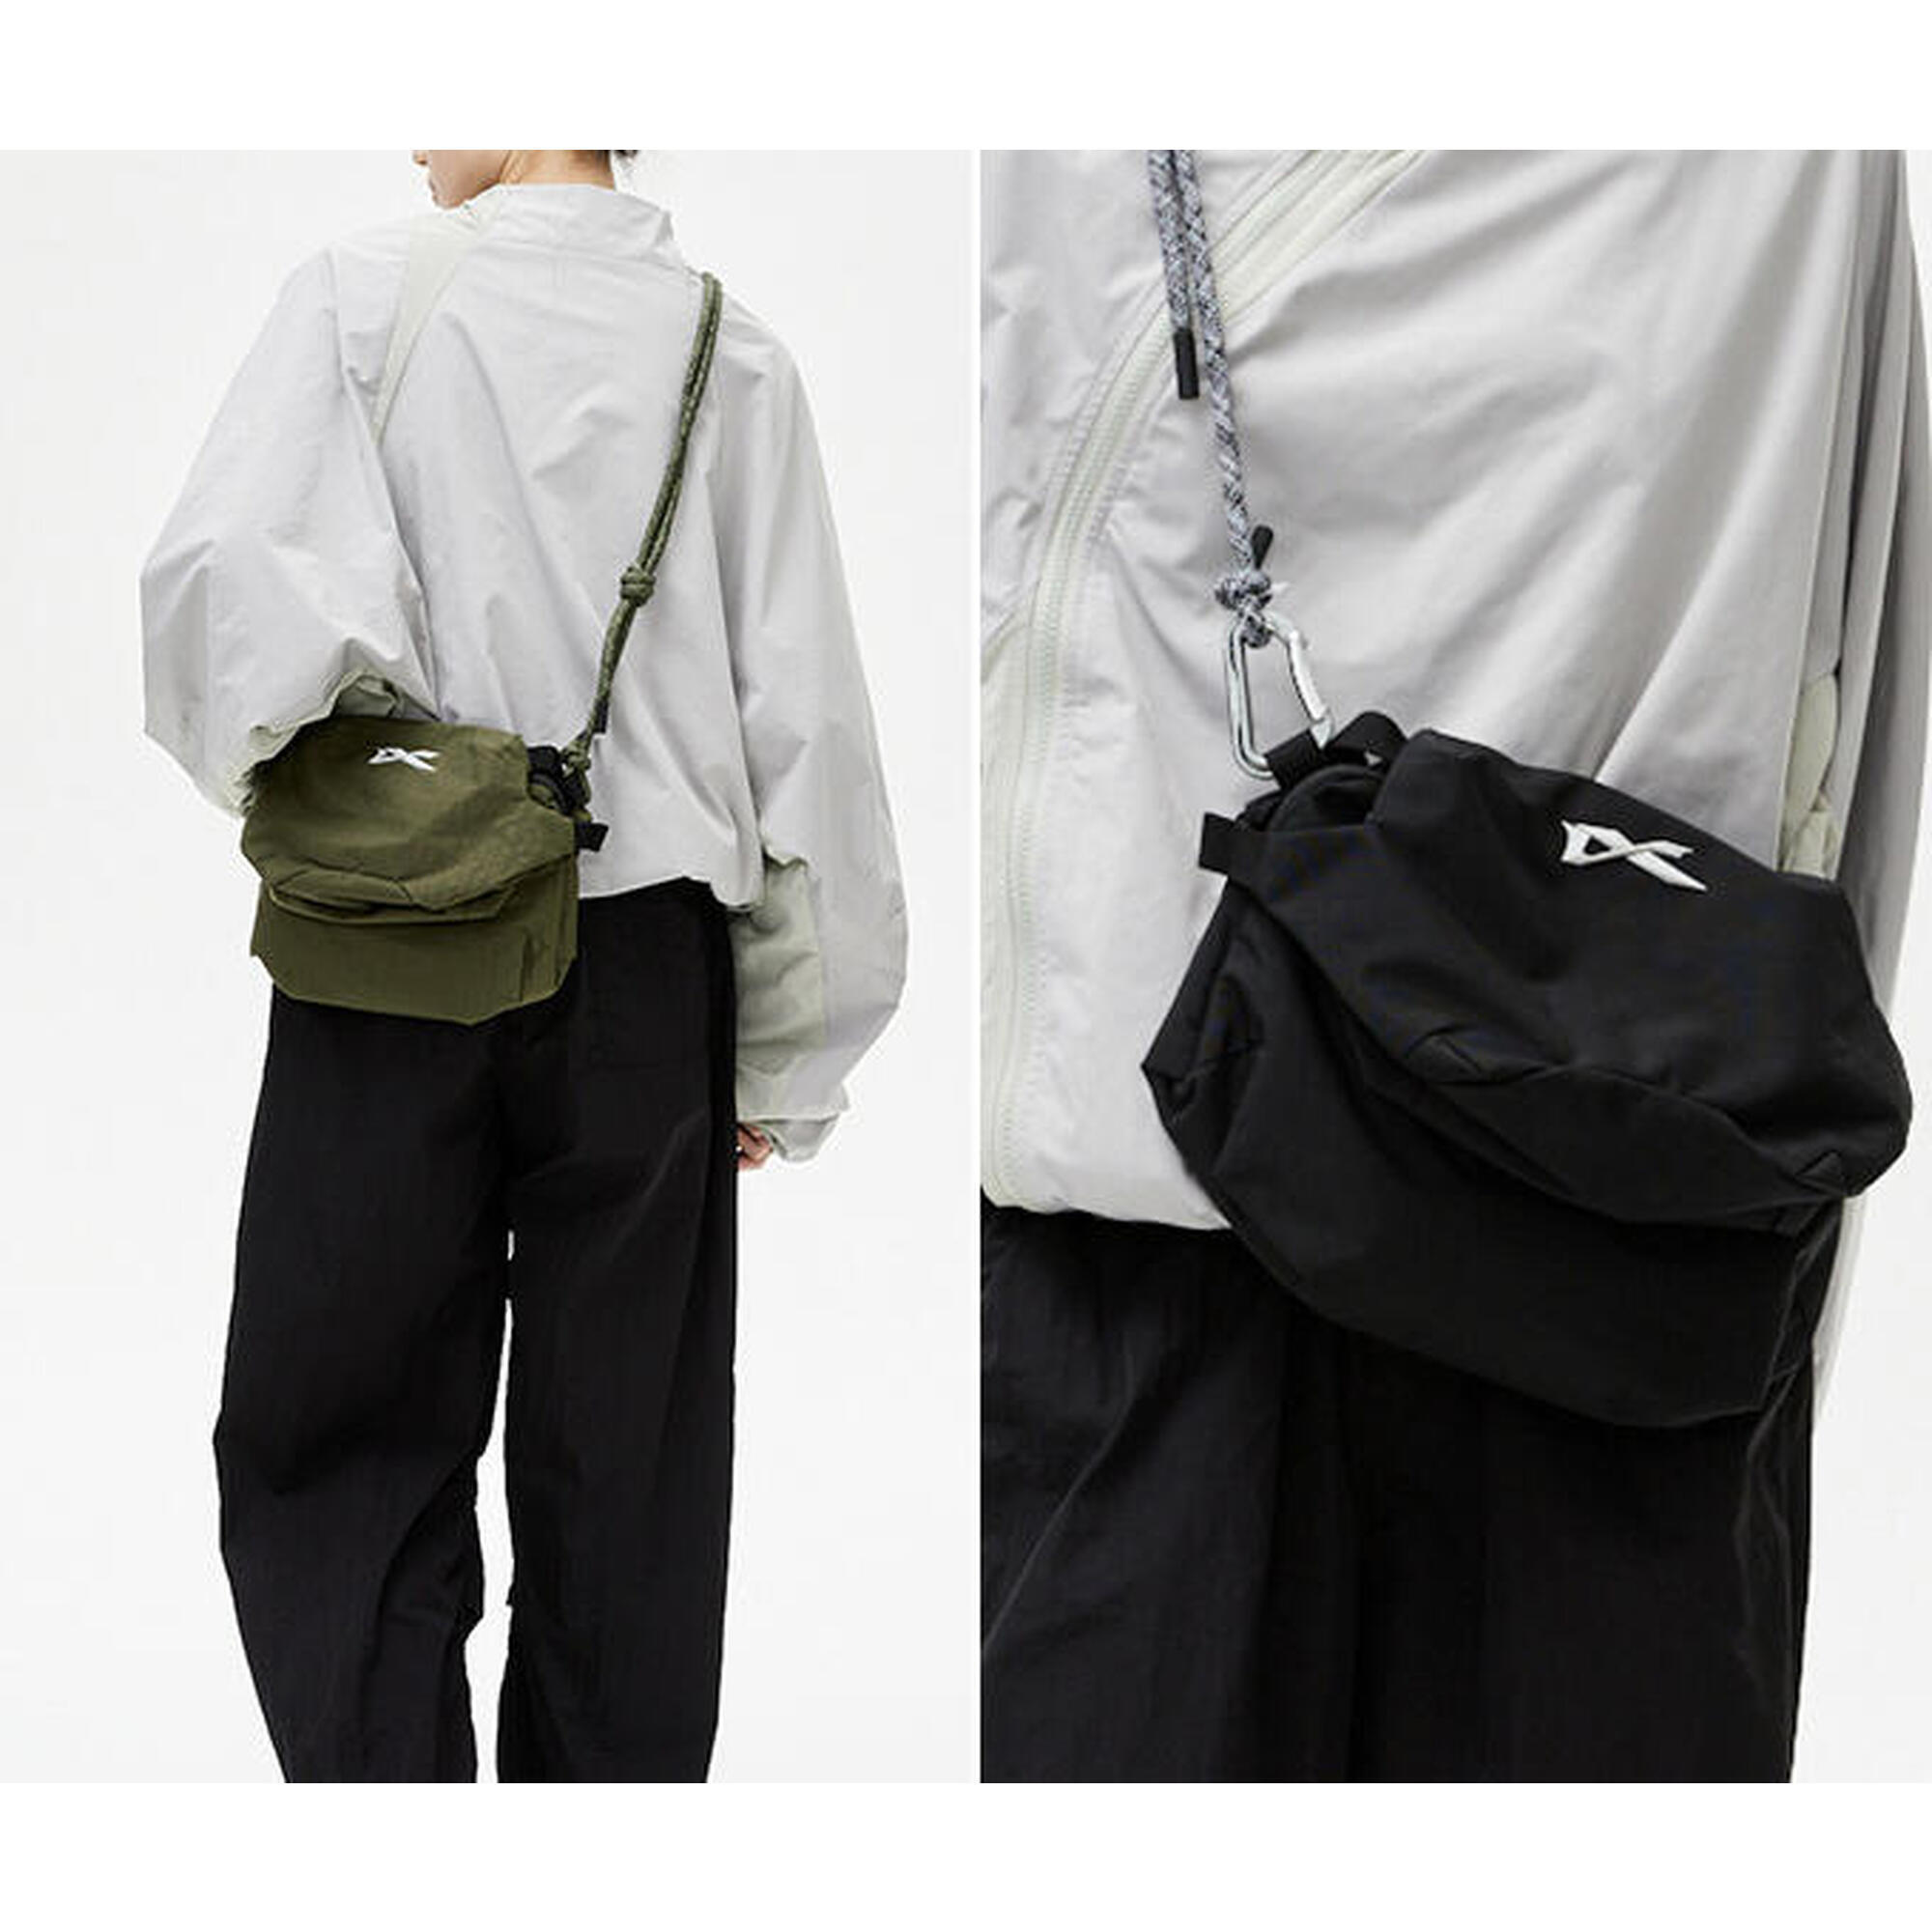 VIA Modularized Sling Bag- Olive Green